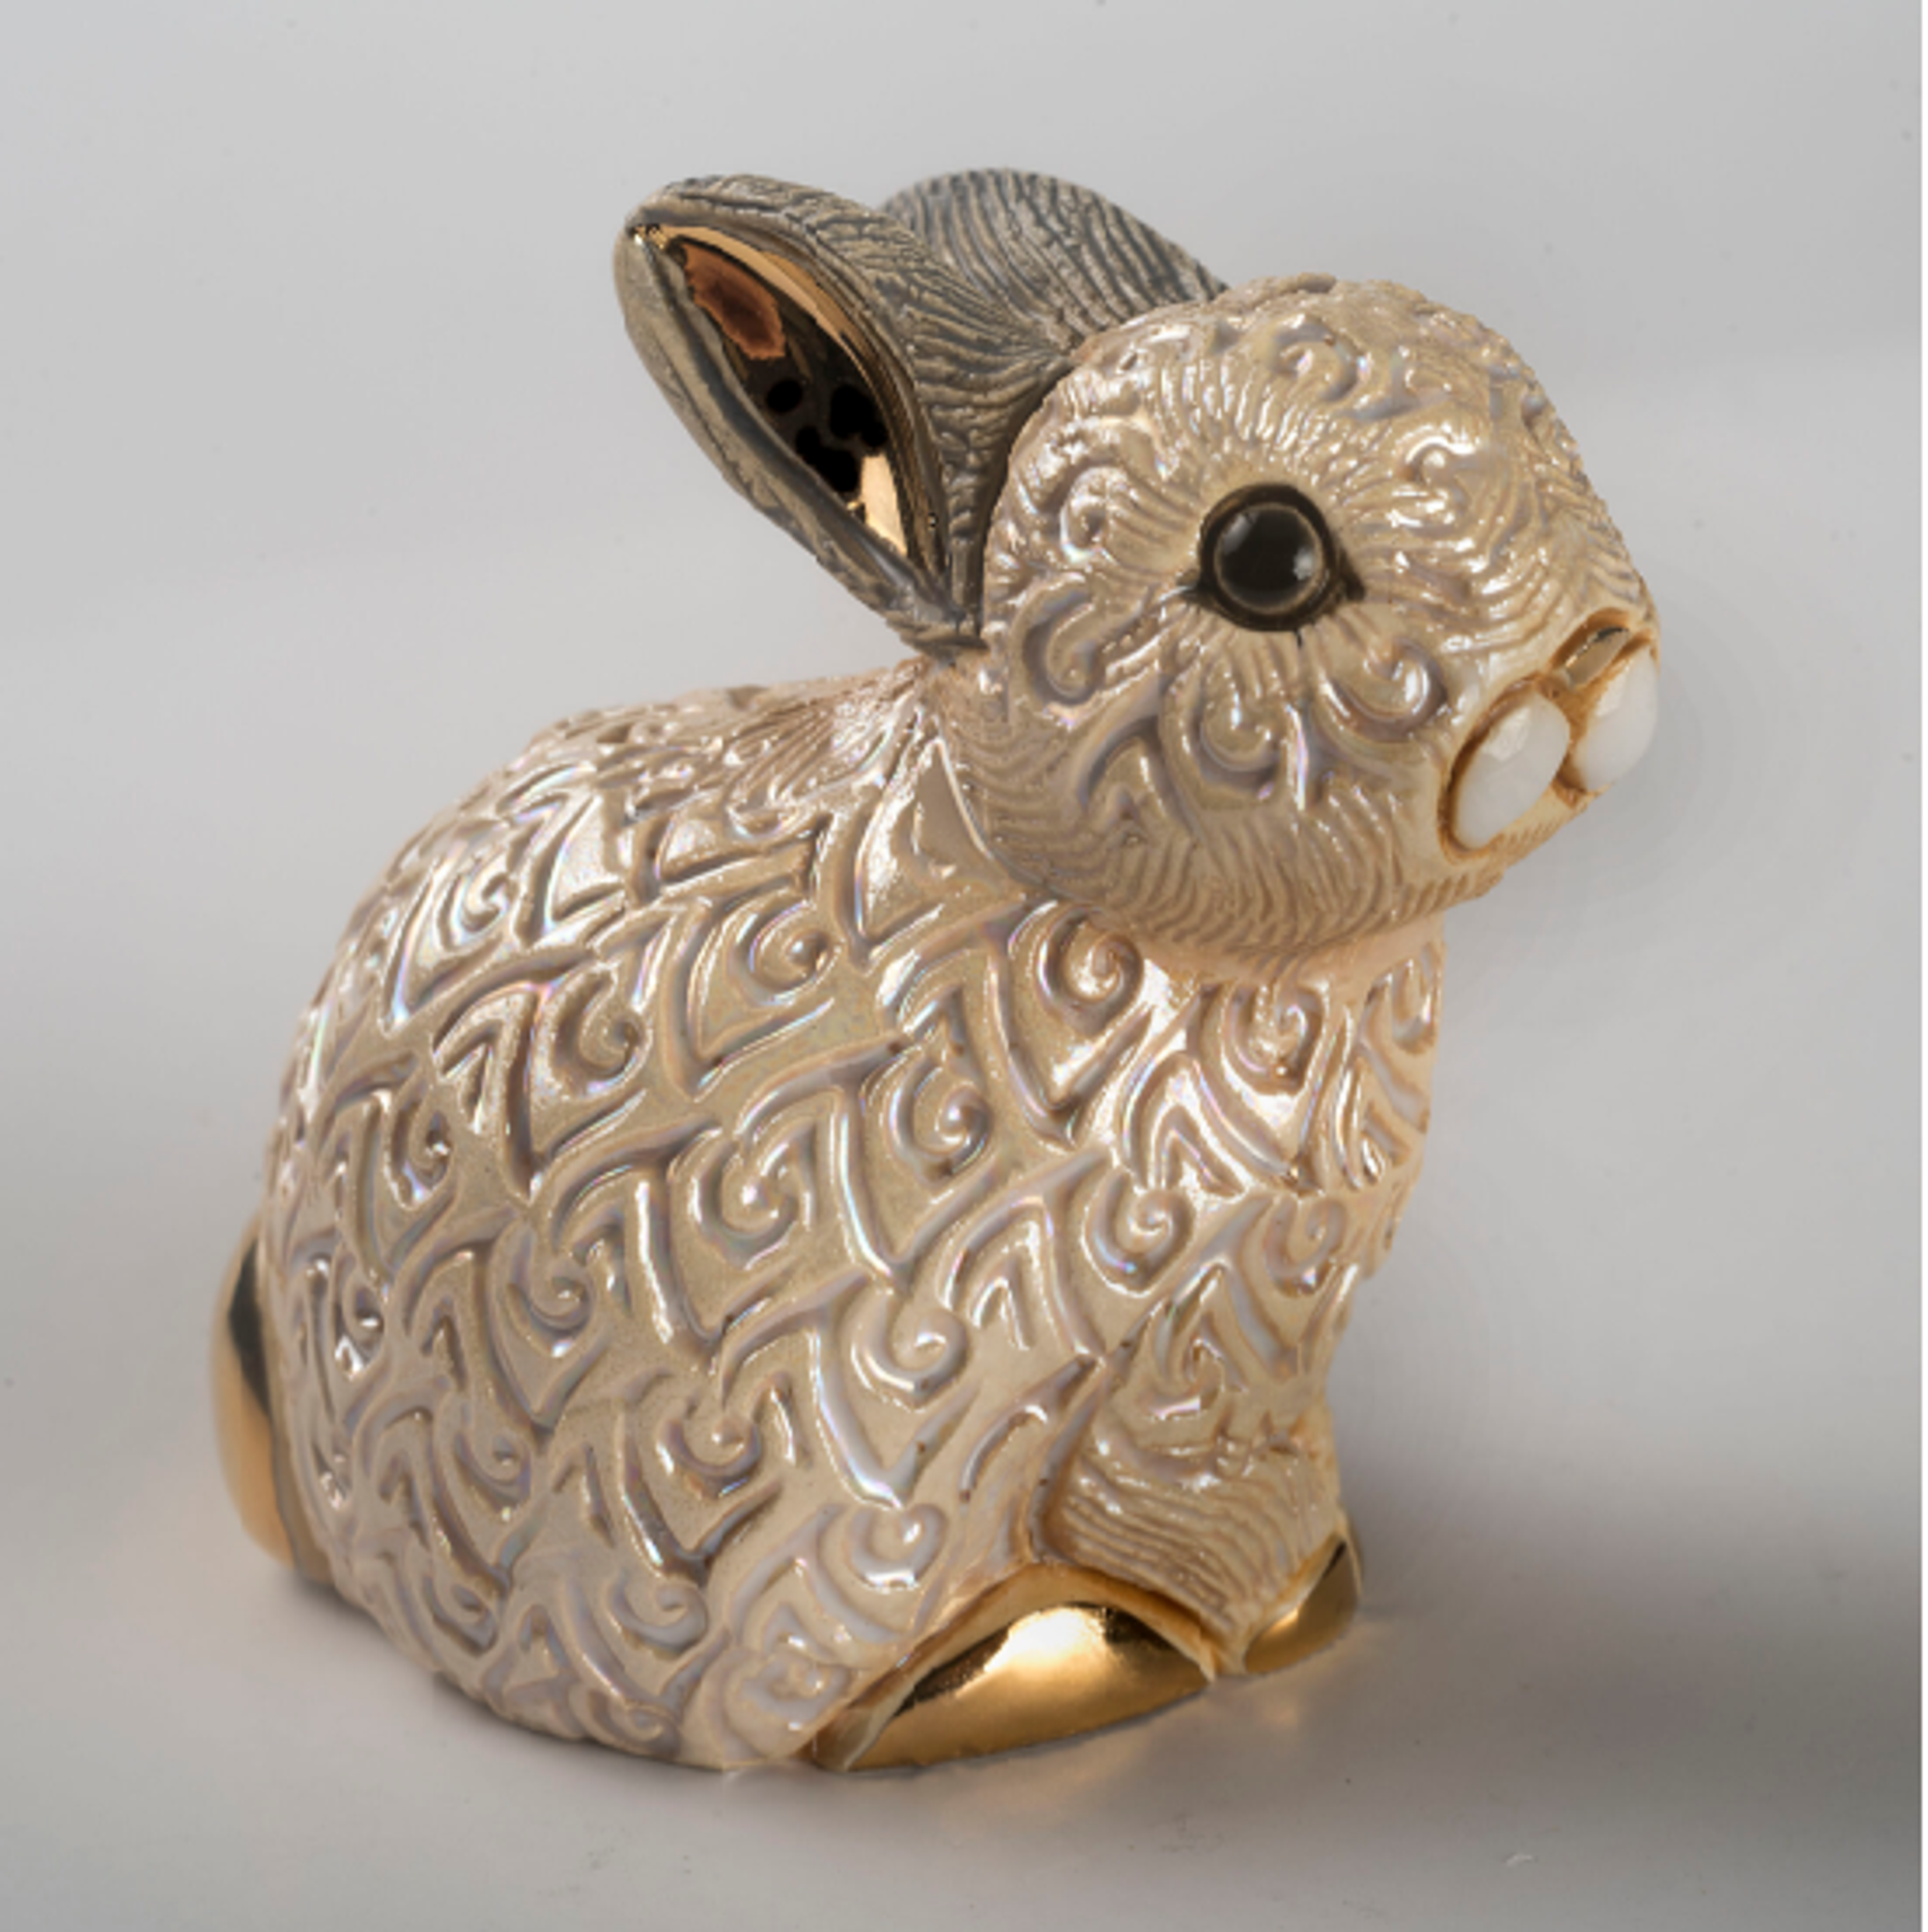 Mini Ceramic Rabbit Figurine